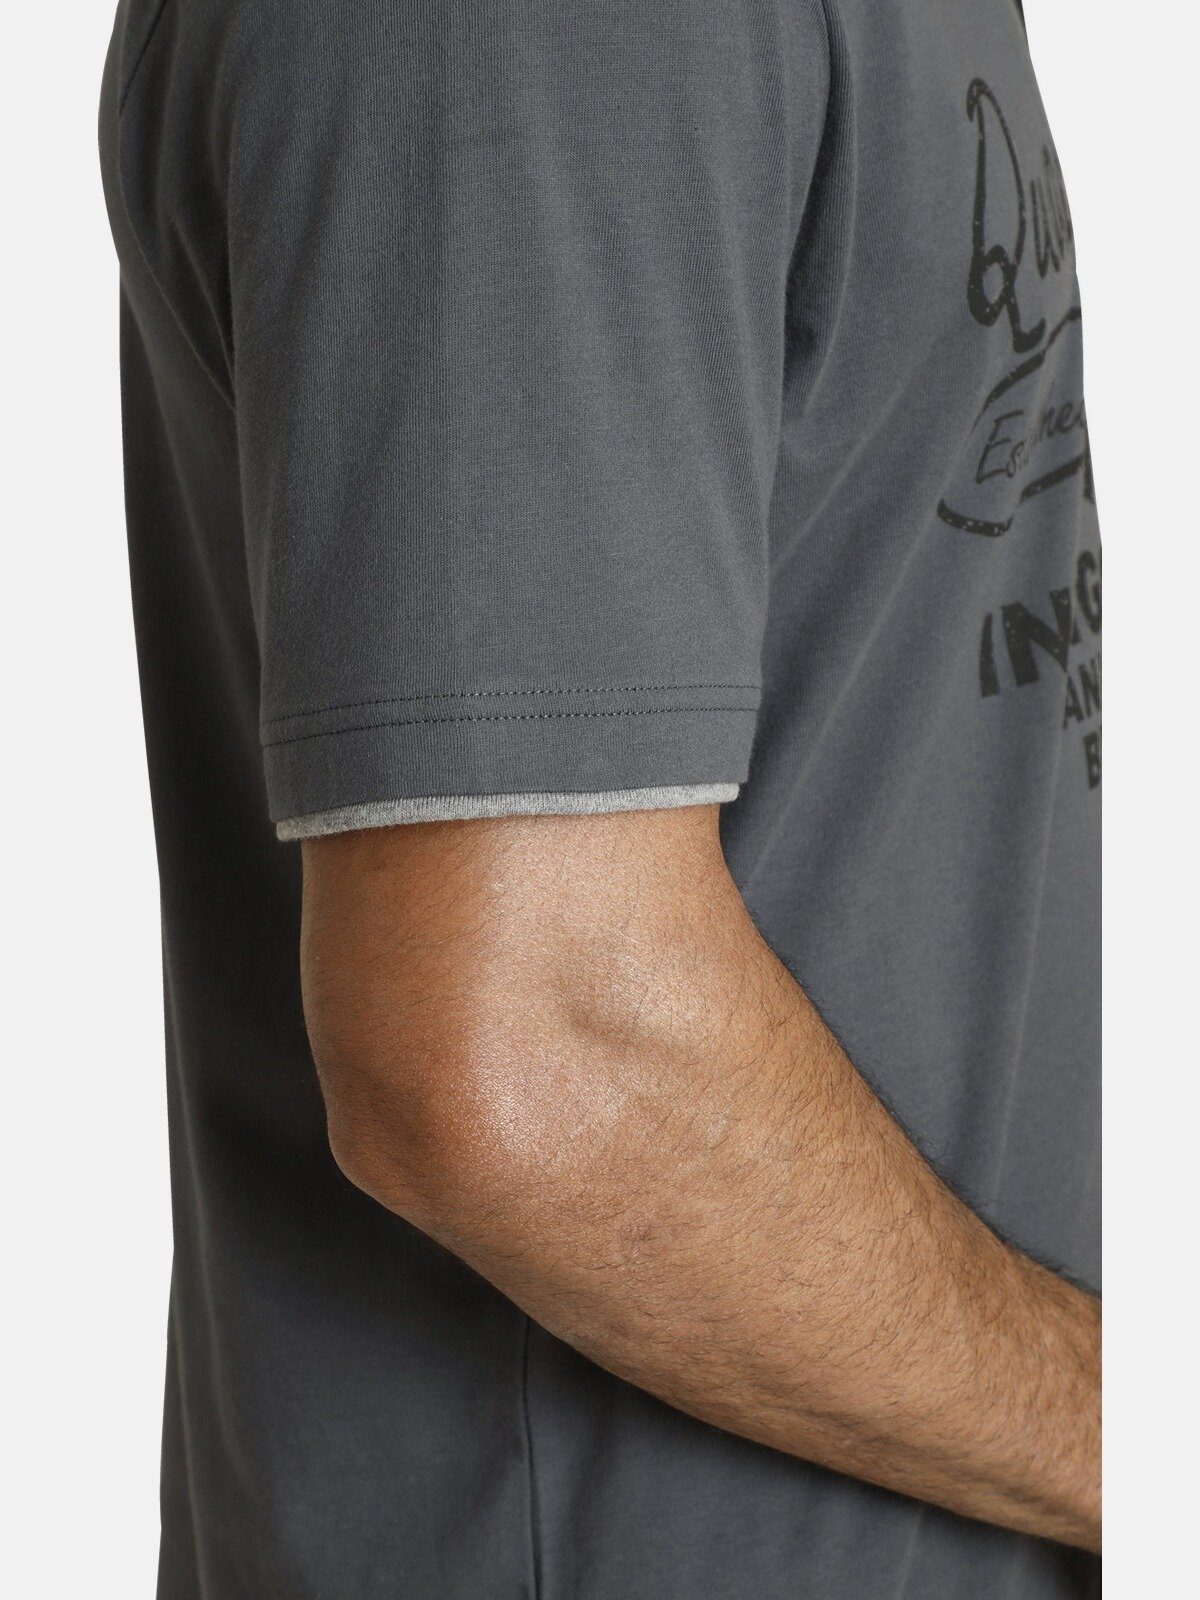 Jan Vanderstorm T-Shirt NANTE im grau Lagen-Look trendigen